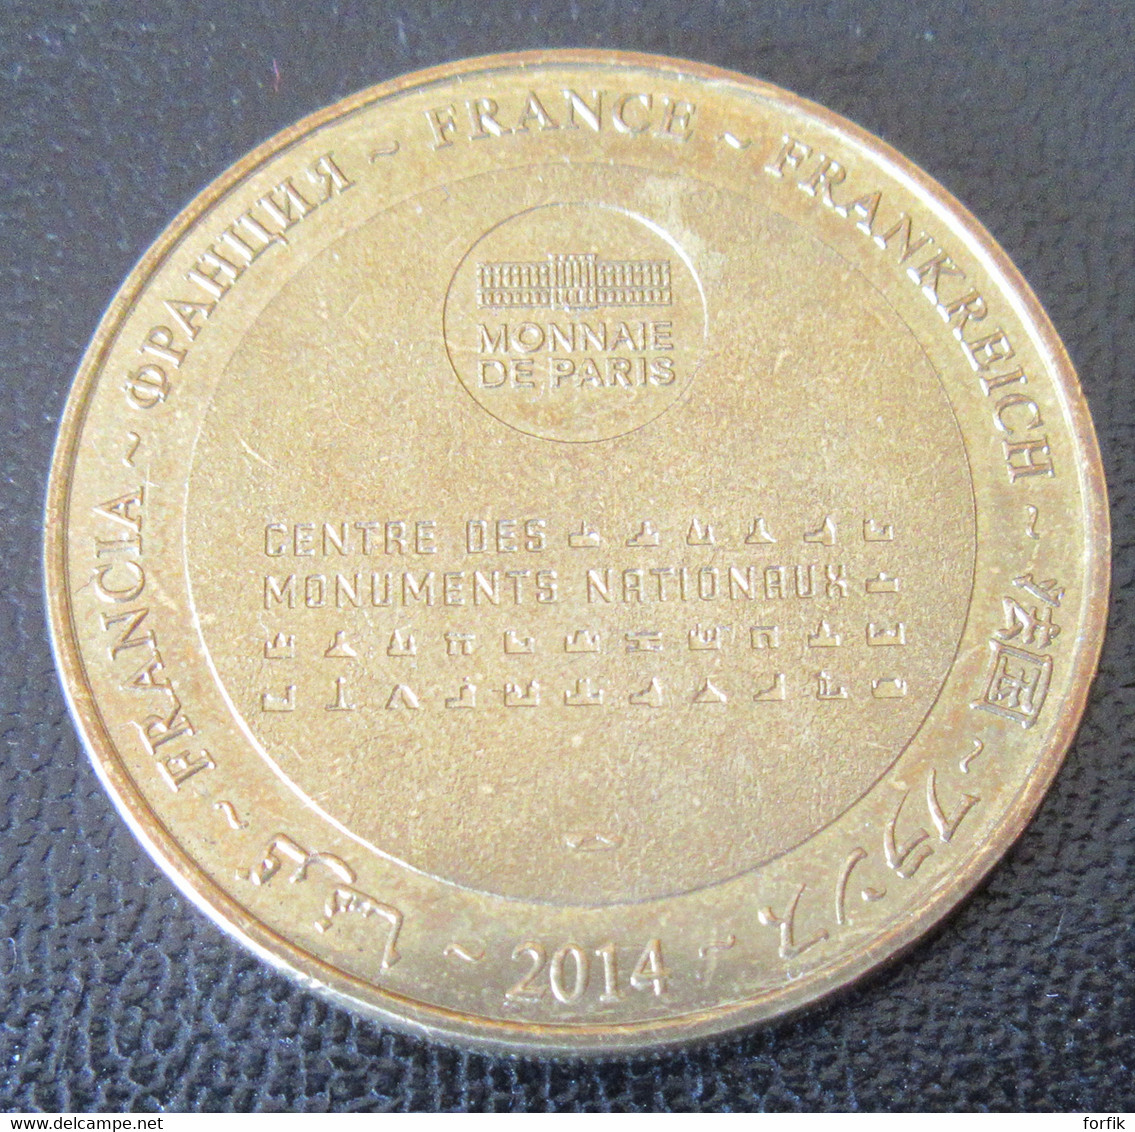 France - Médaille De La Monnaie De Paris - Archange Saint-Michel / Abbay Mont St Michel - 2014 - 2014